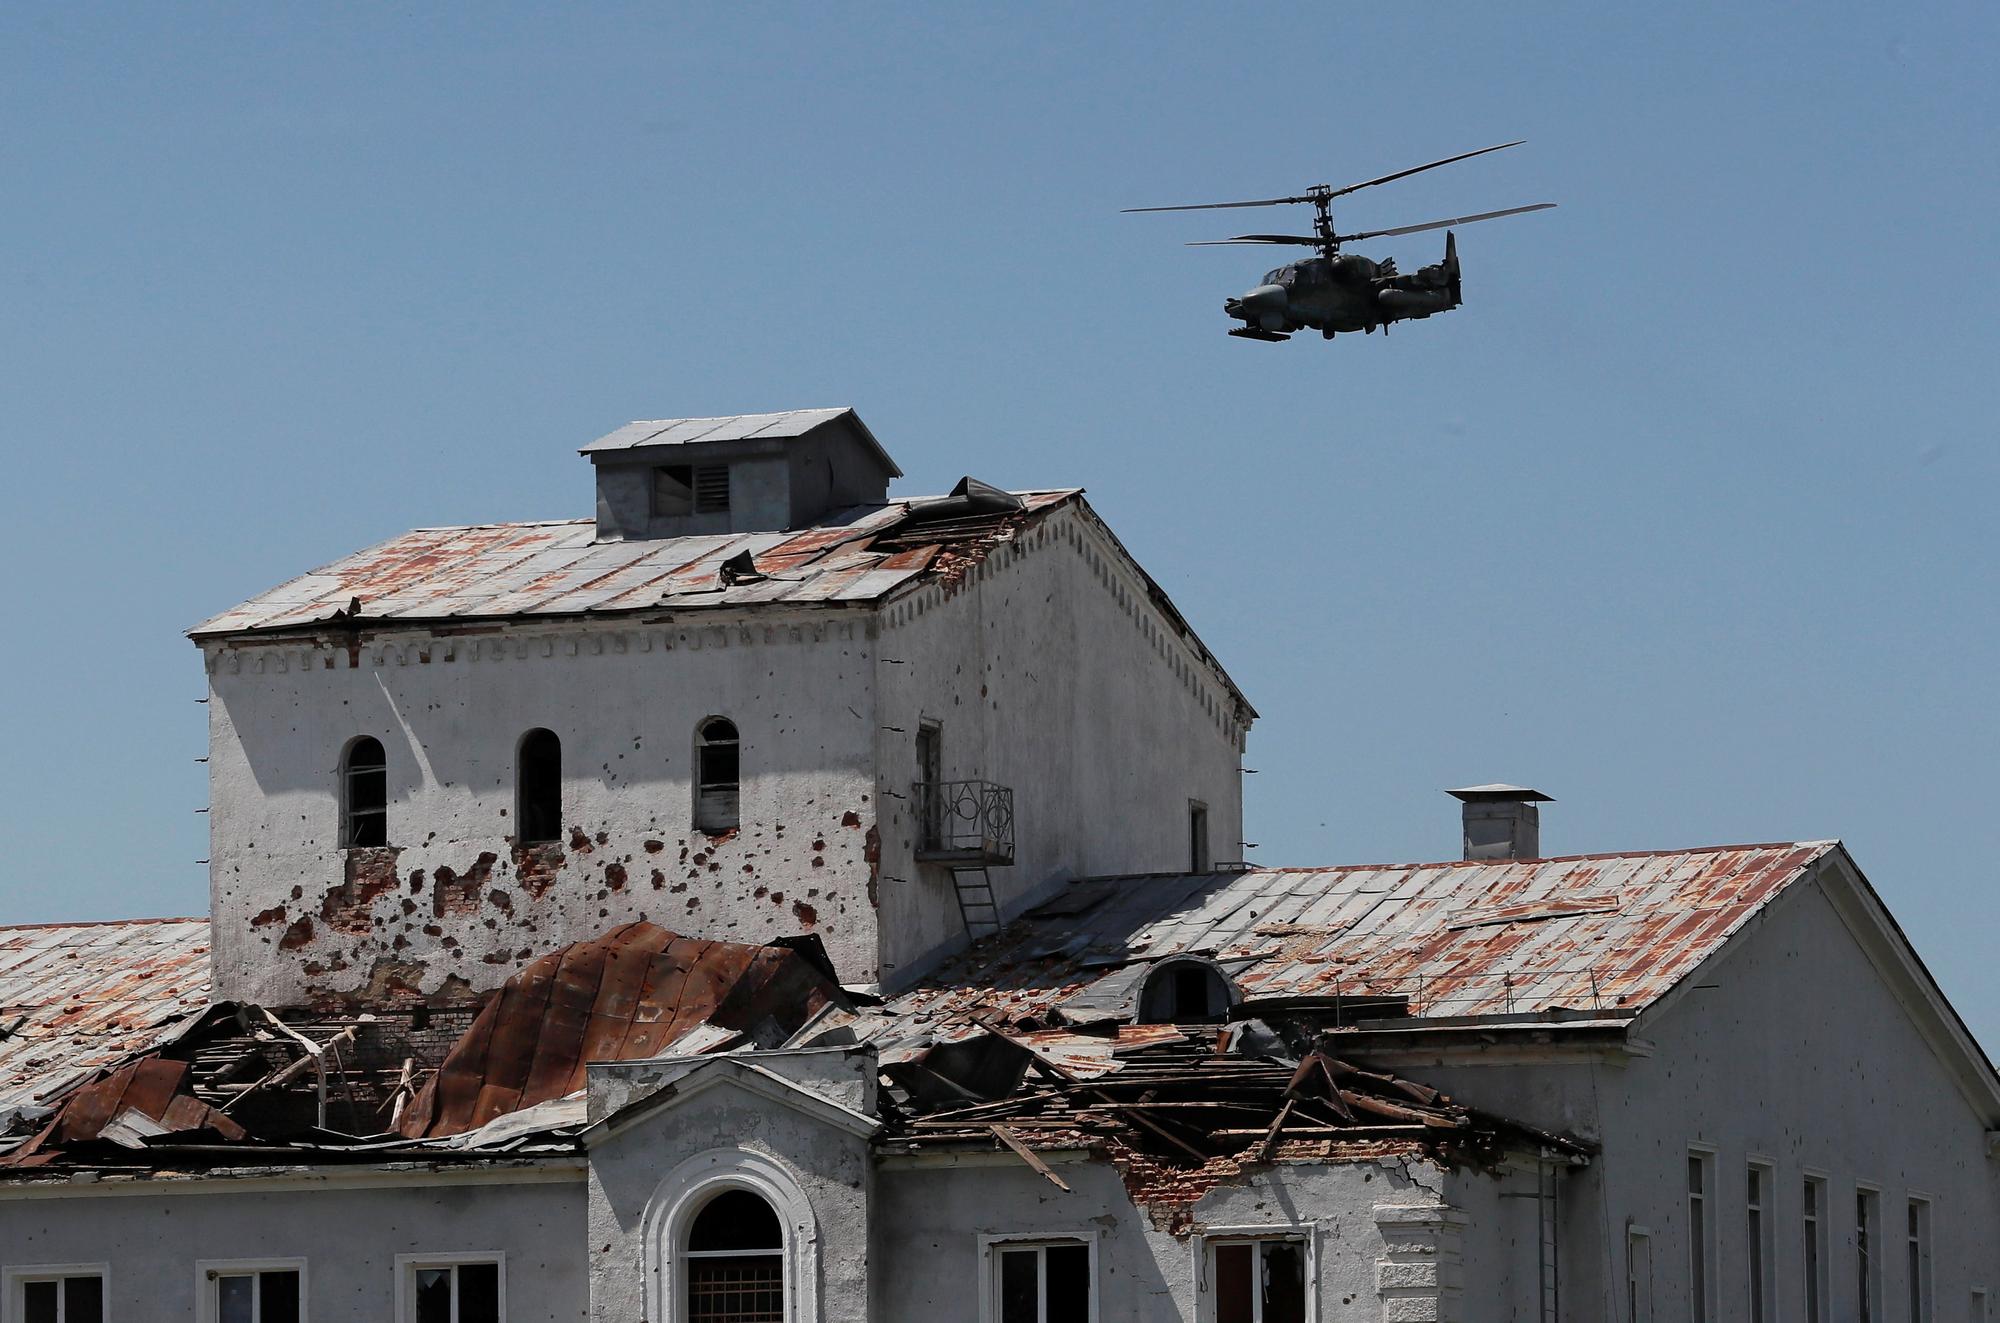 Un hélicoptère d'attaque russe Ka-52  vole près d'un bâtiment fortement endommagé dans la ville de Popasna, dans la région de Lougansk. [reuters - Alexander Ermochenko]